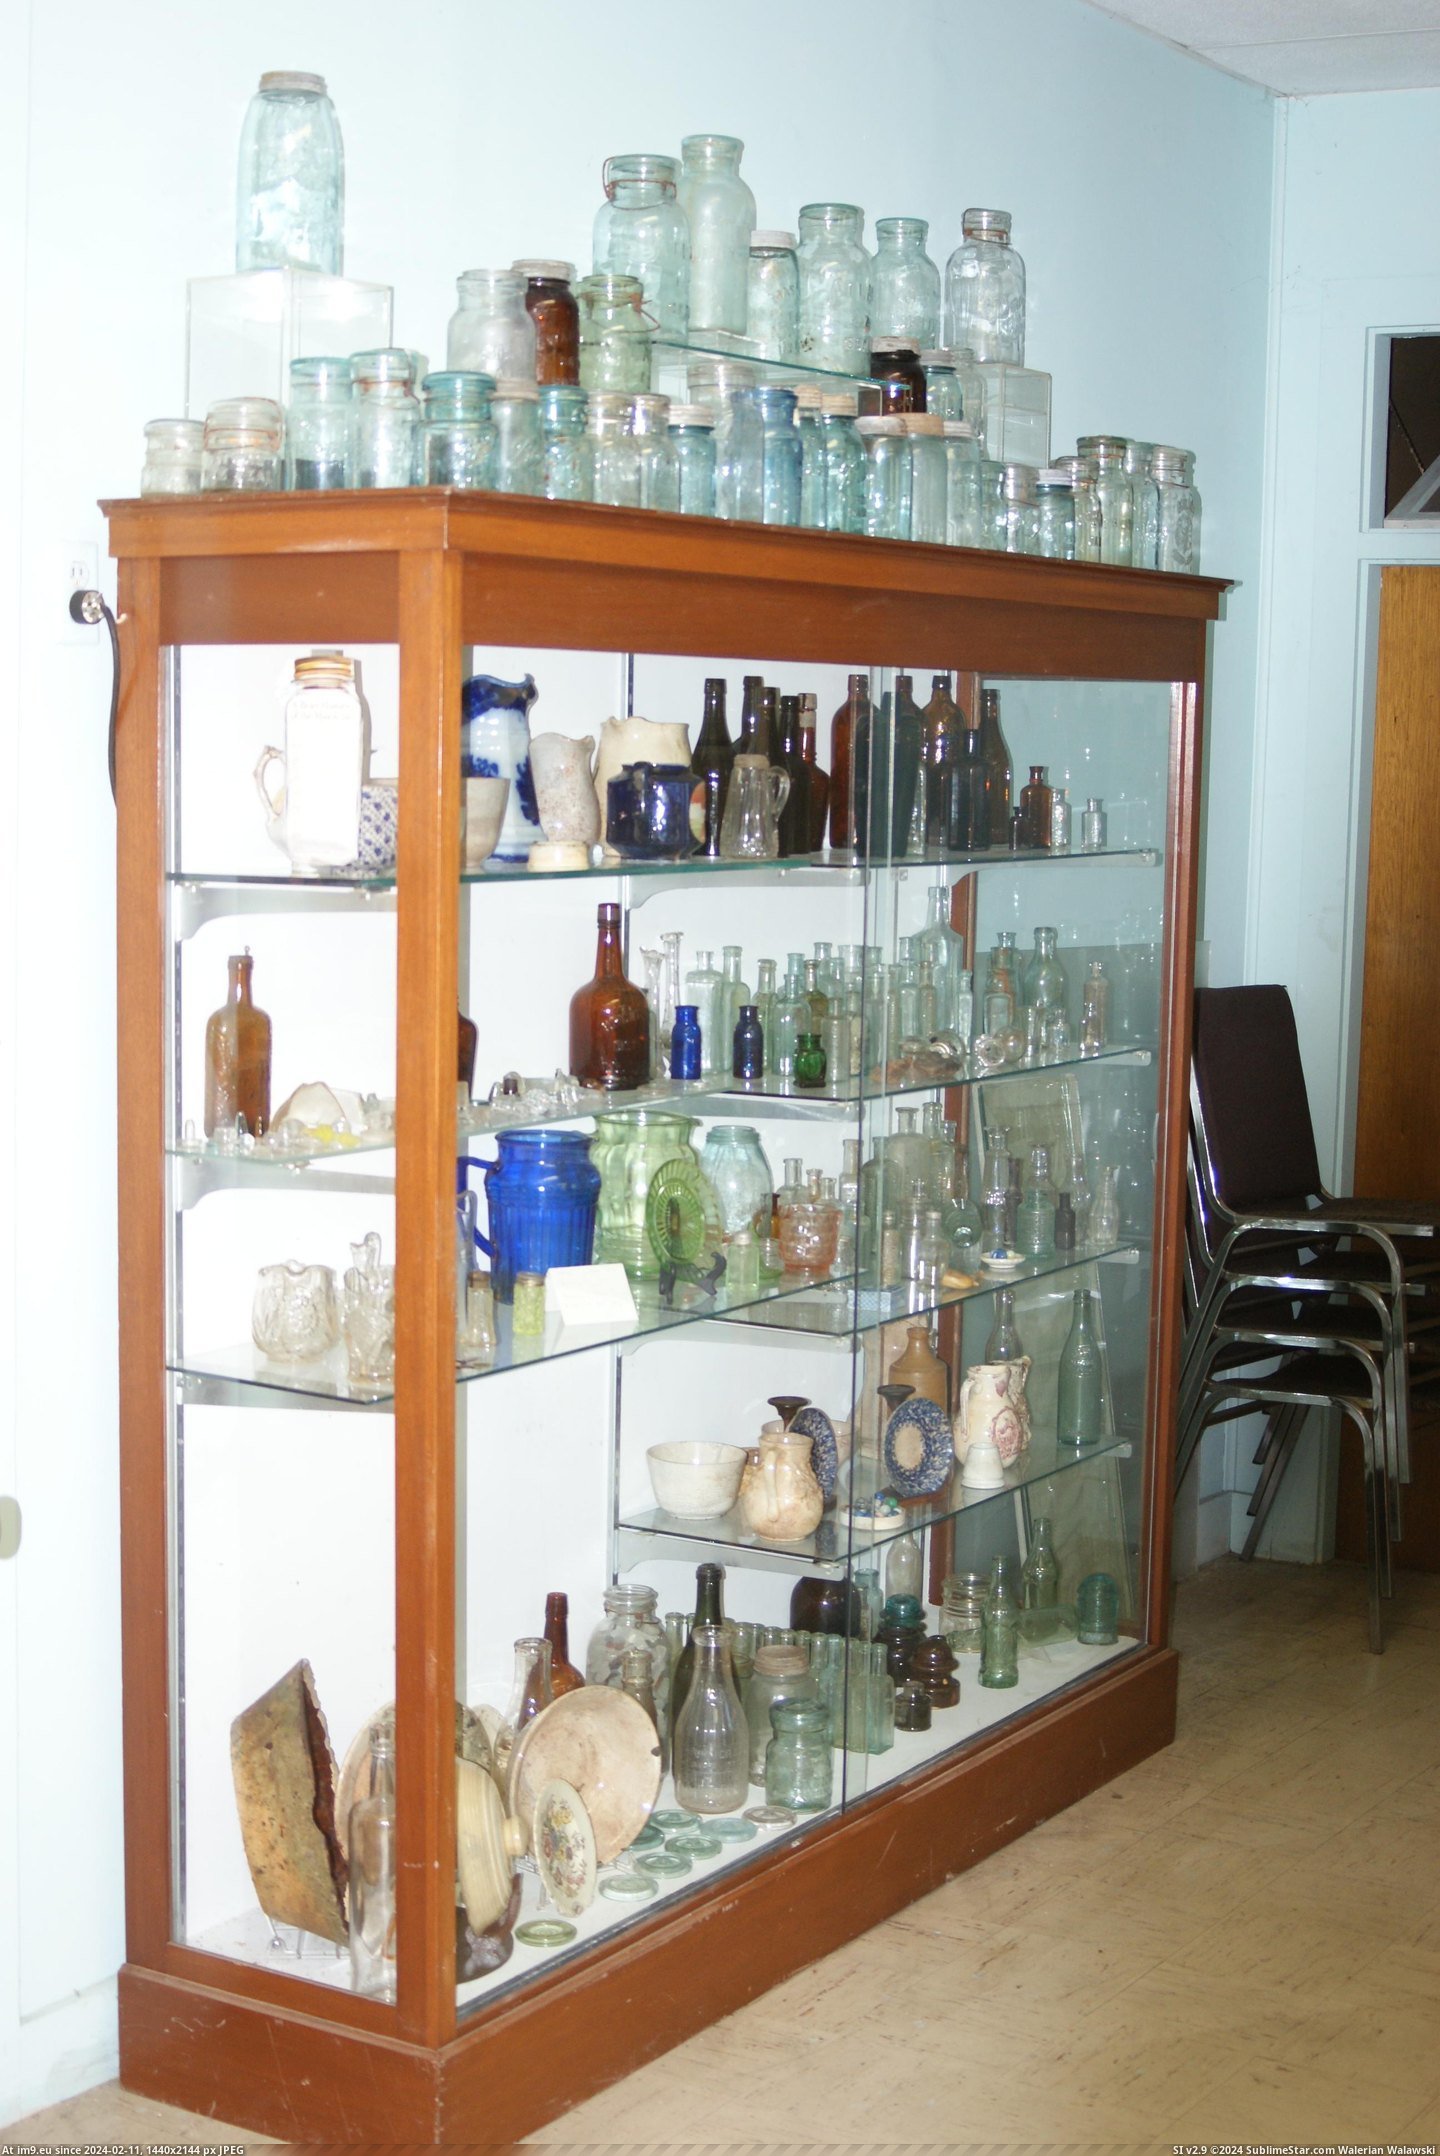 #Museum #Maine #Naples #Bottle MAINE BOTTLE MUSEUM NAPLES (1) Pic. (Bild von album MAINE BOTTLE MUSEUM))